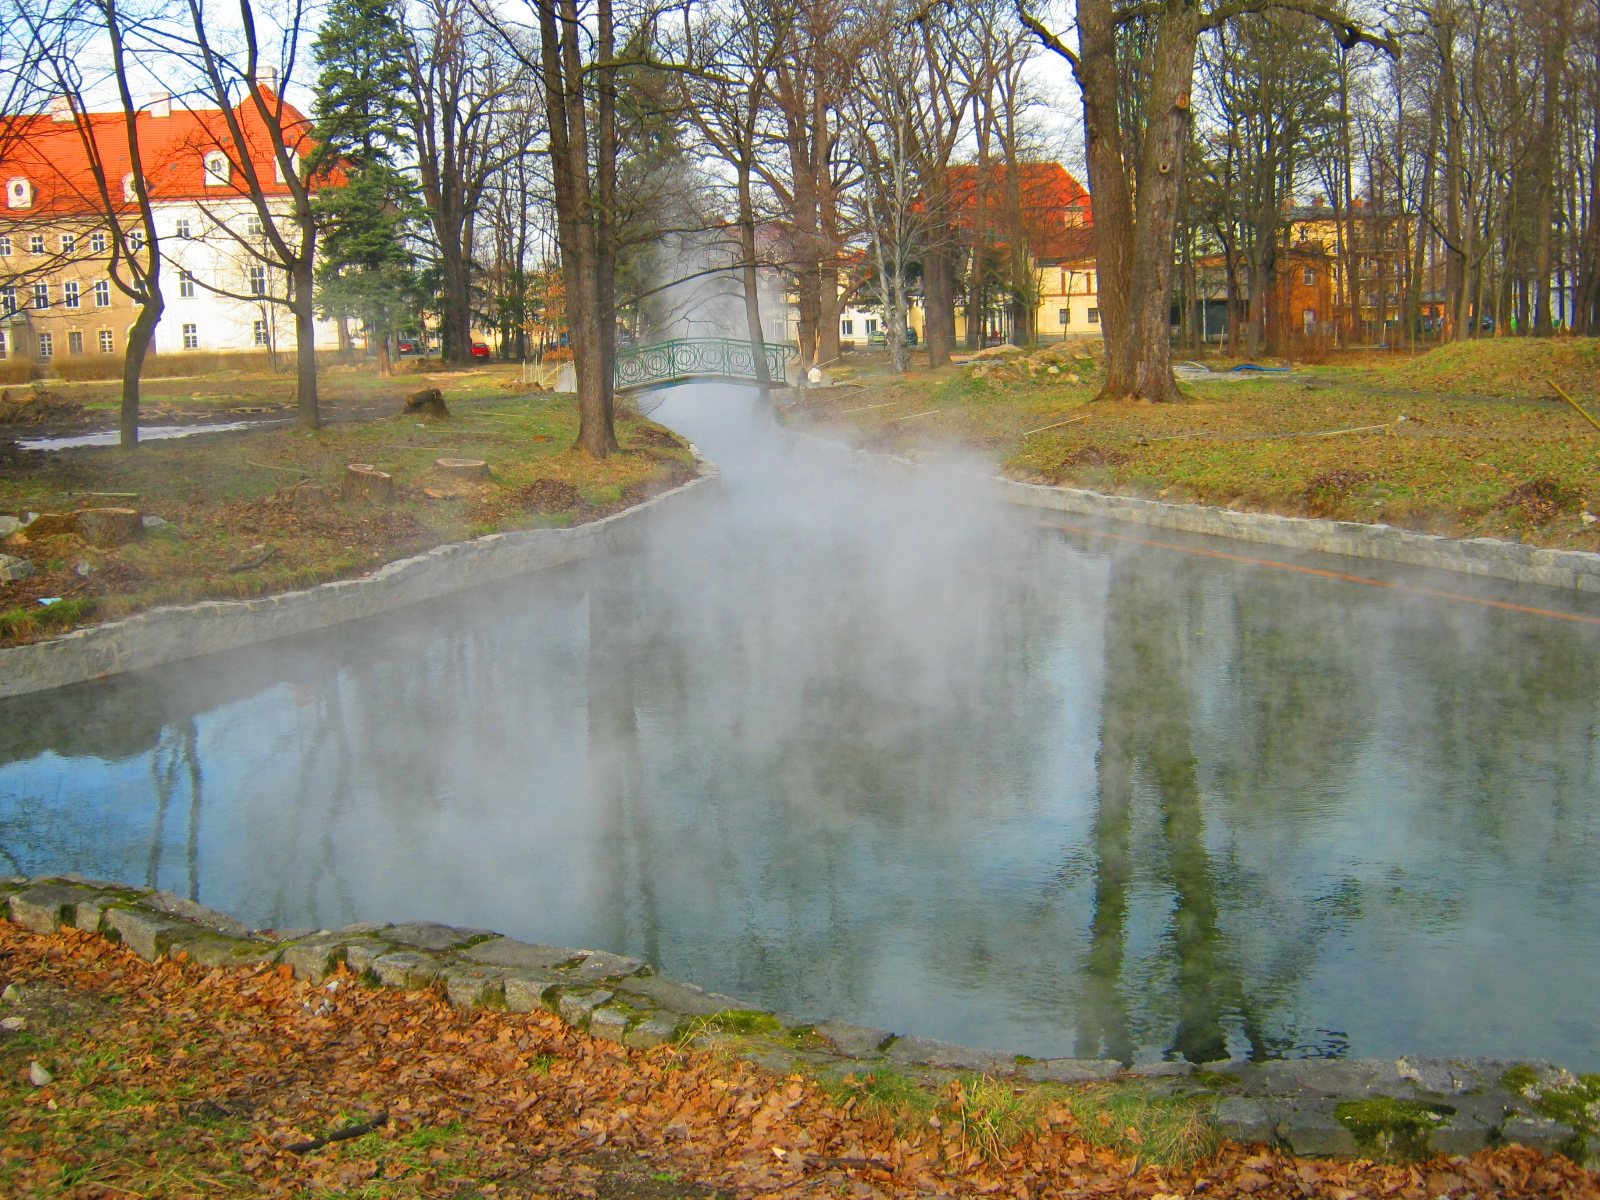 Gorąca woda w cieplickich basenach w Parku Zdrojowym